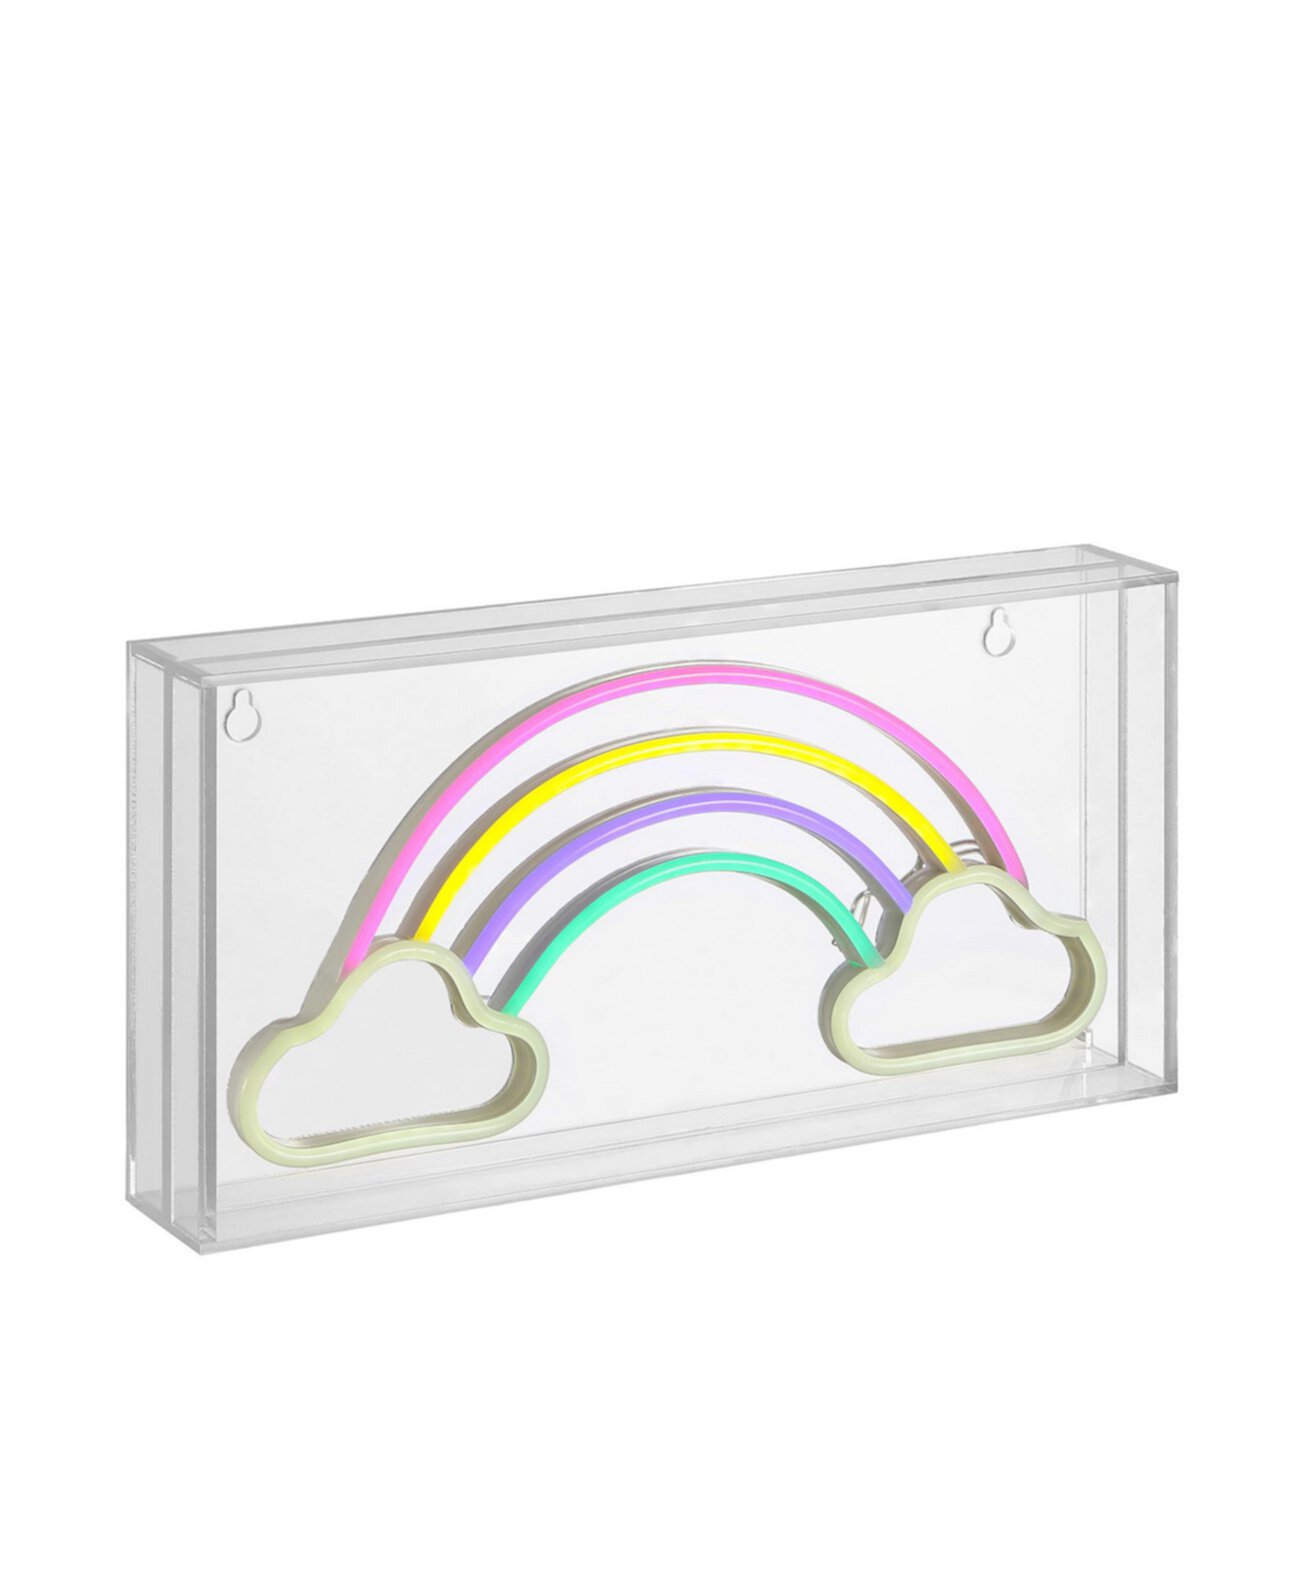 Акриловая коробка Rainhow Contemporary Glam со светодиодной подсветкой USB JONATHAN Y